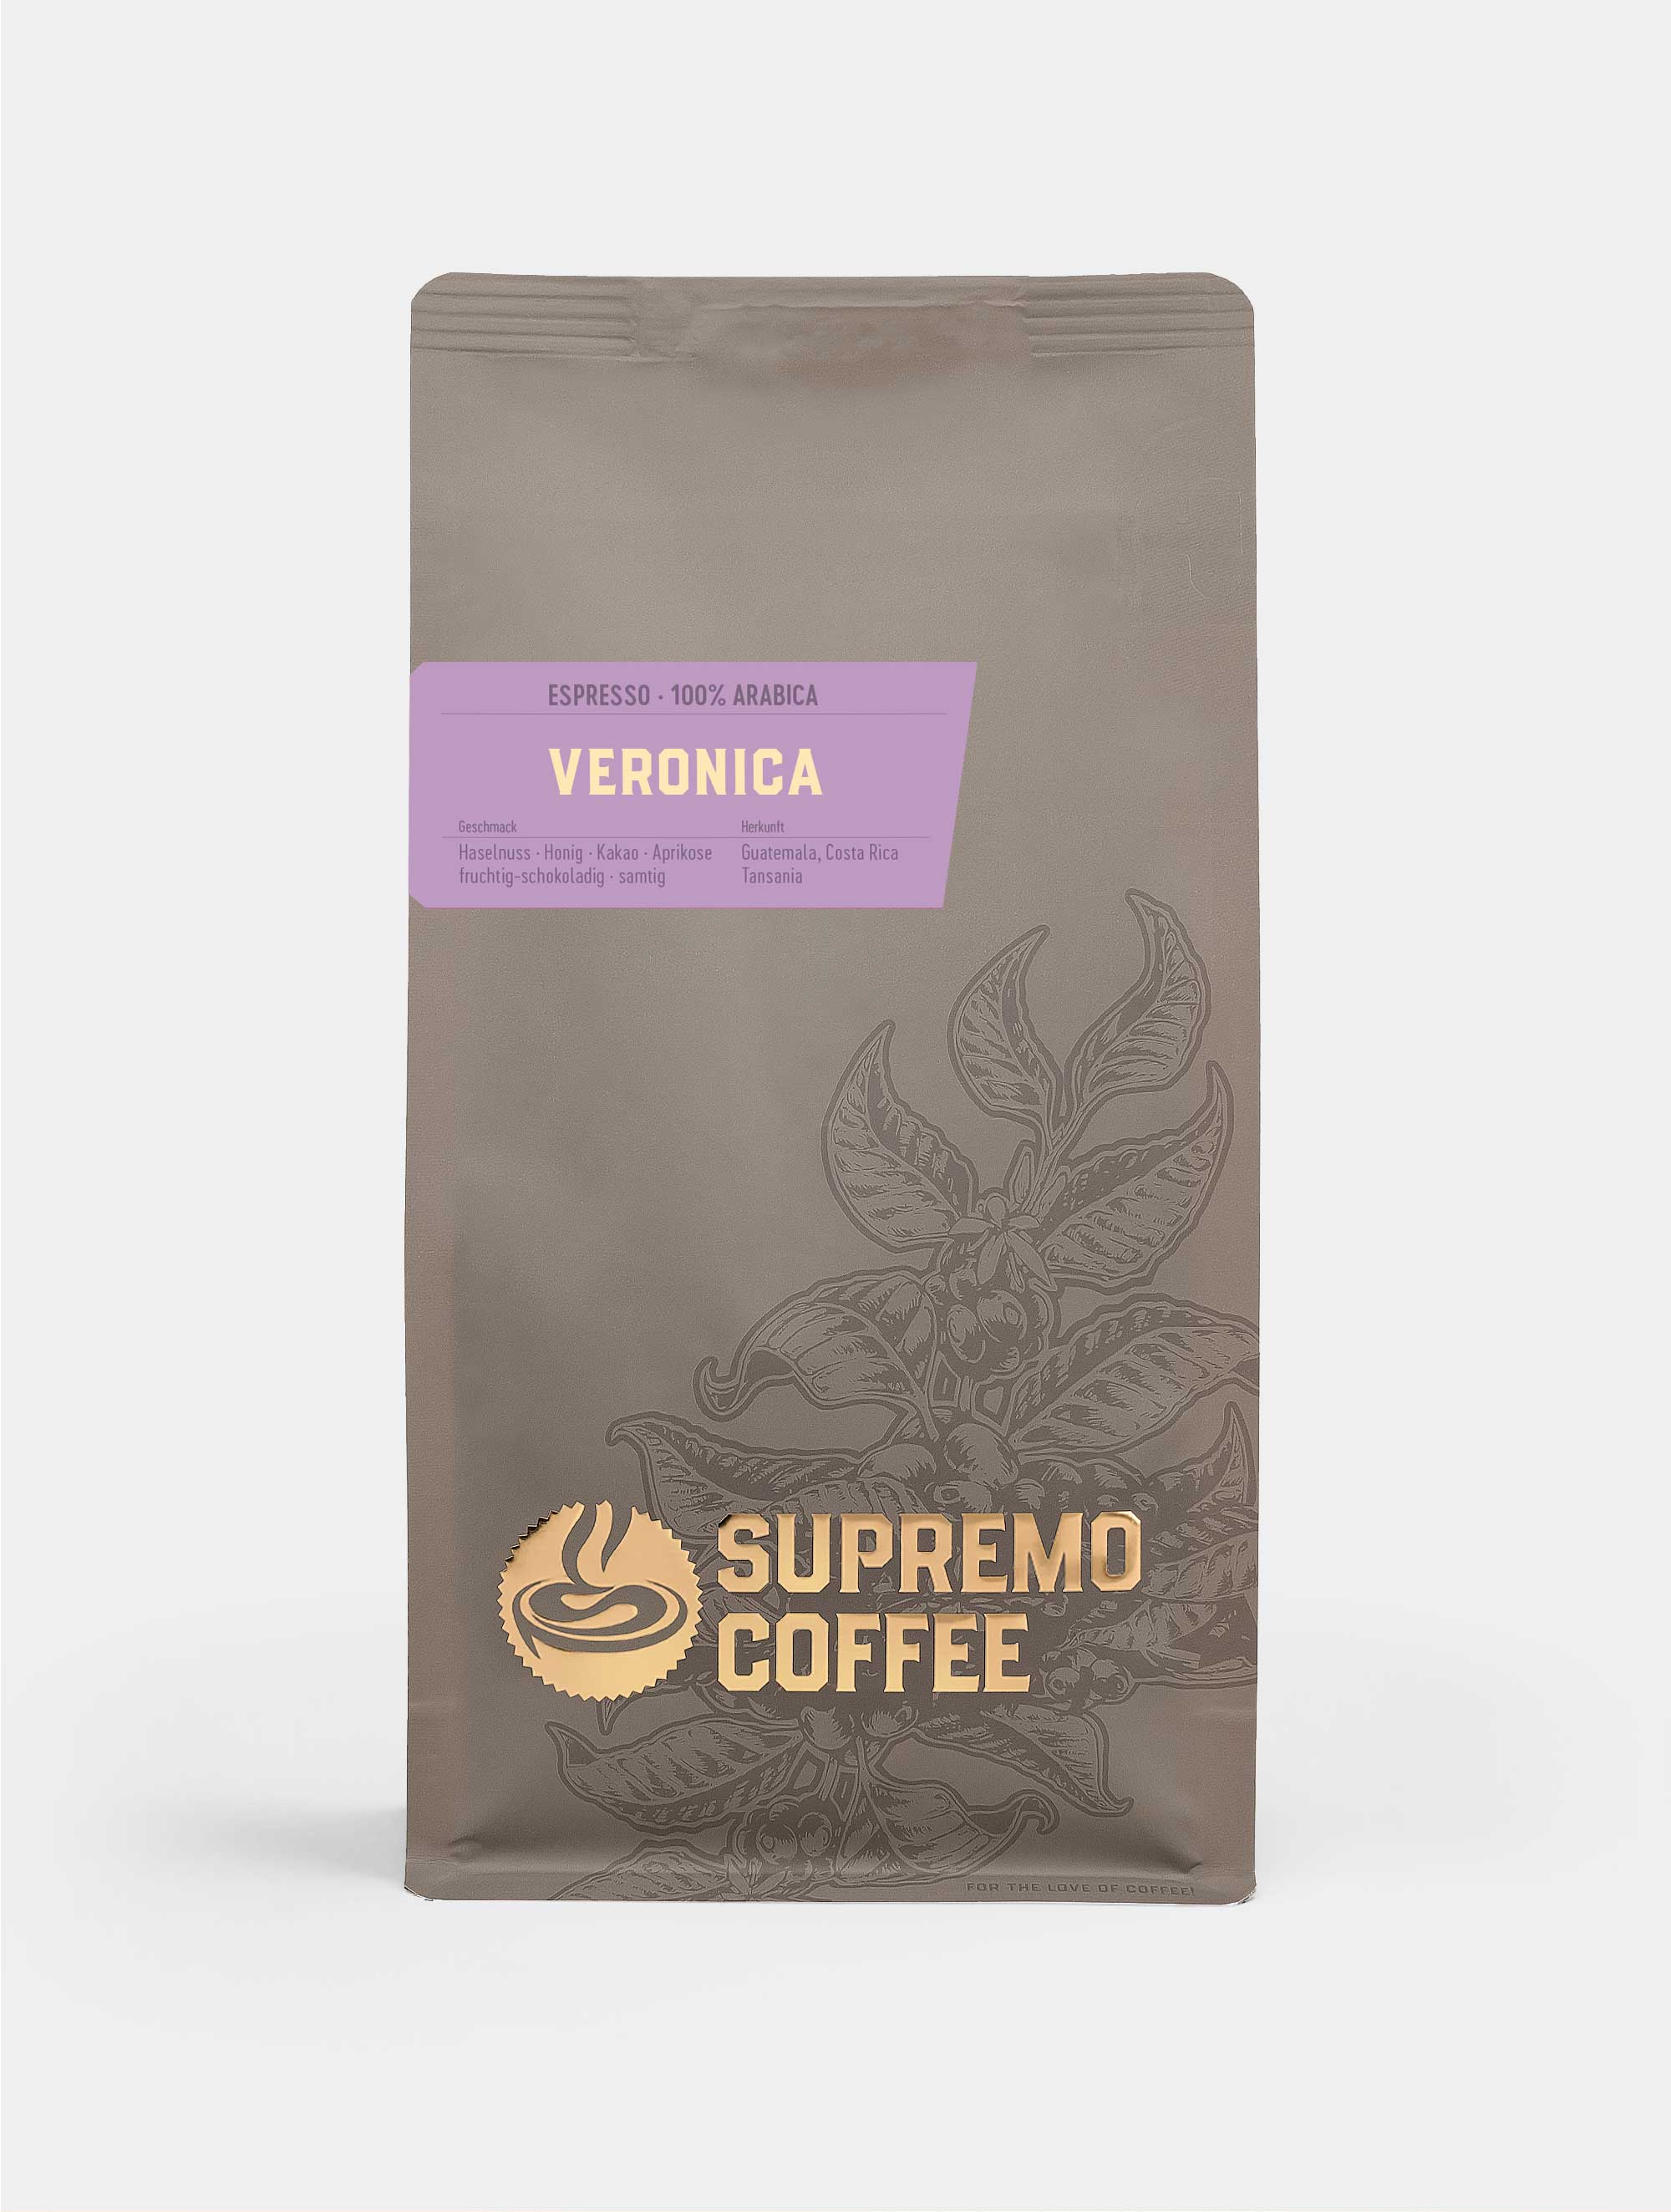 Veronica, Espresso 100% Arabica | SUPREMO Coffee